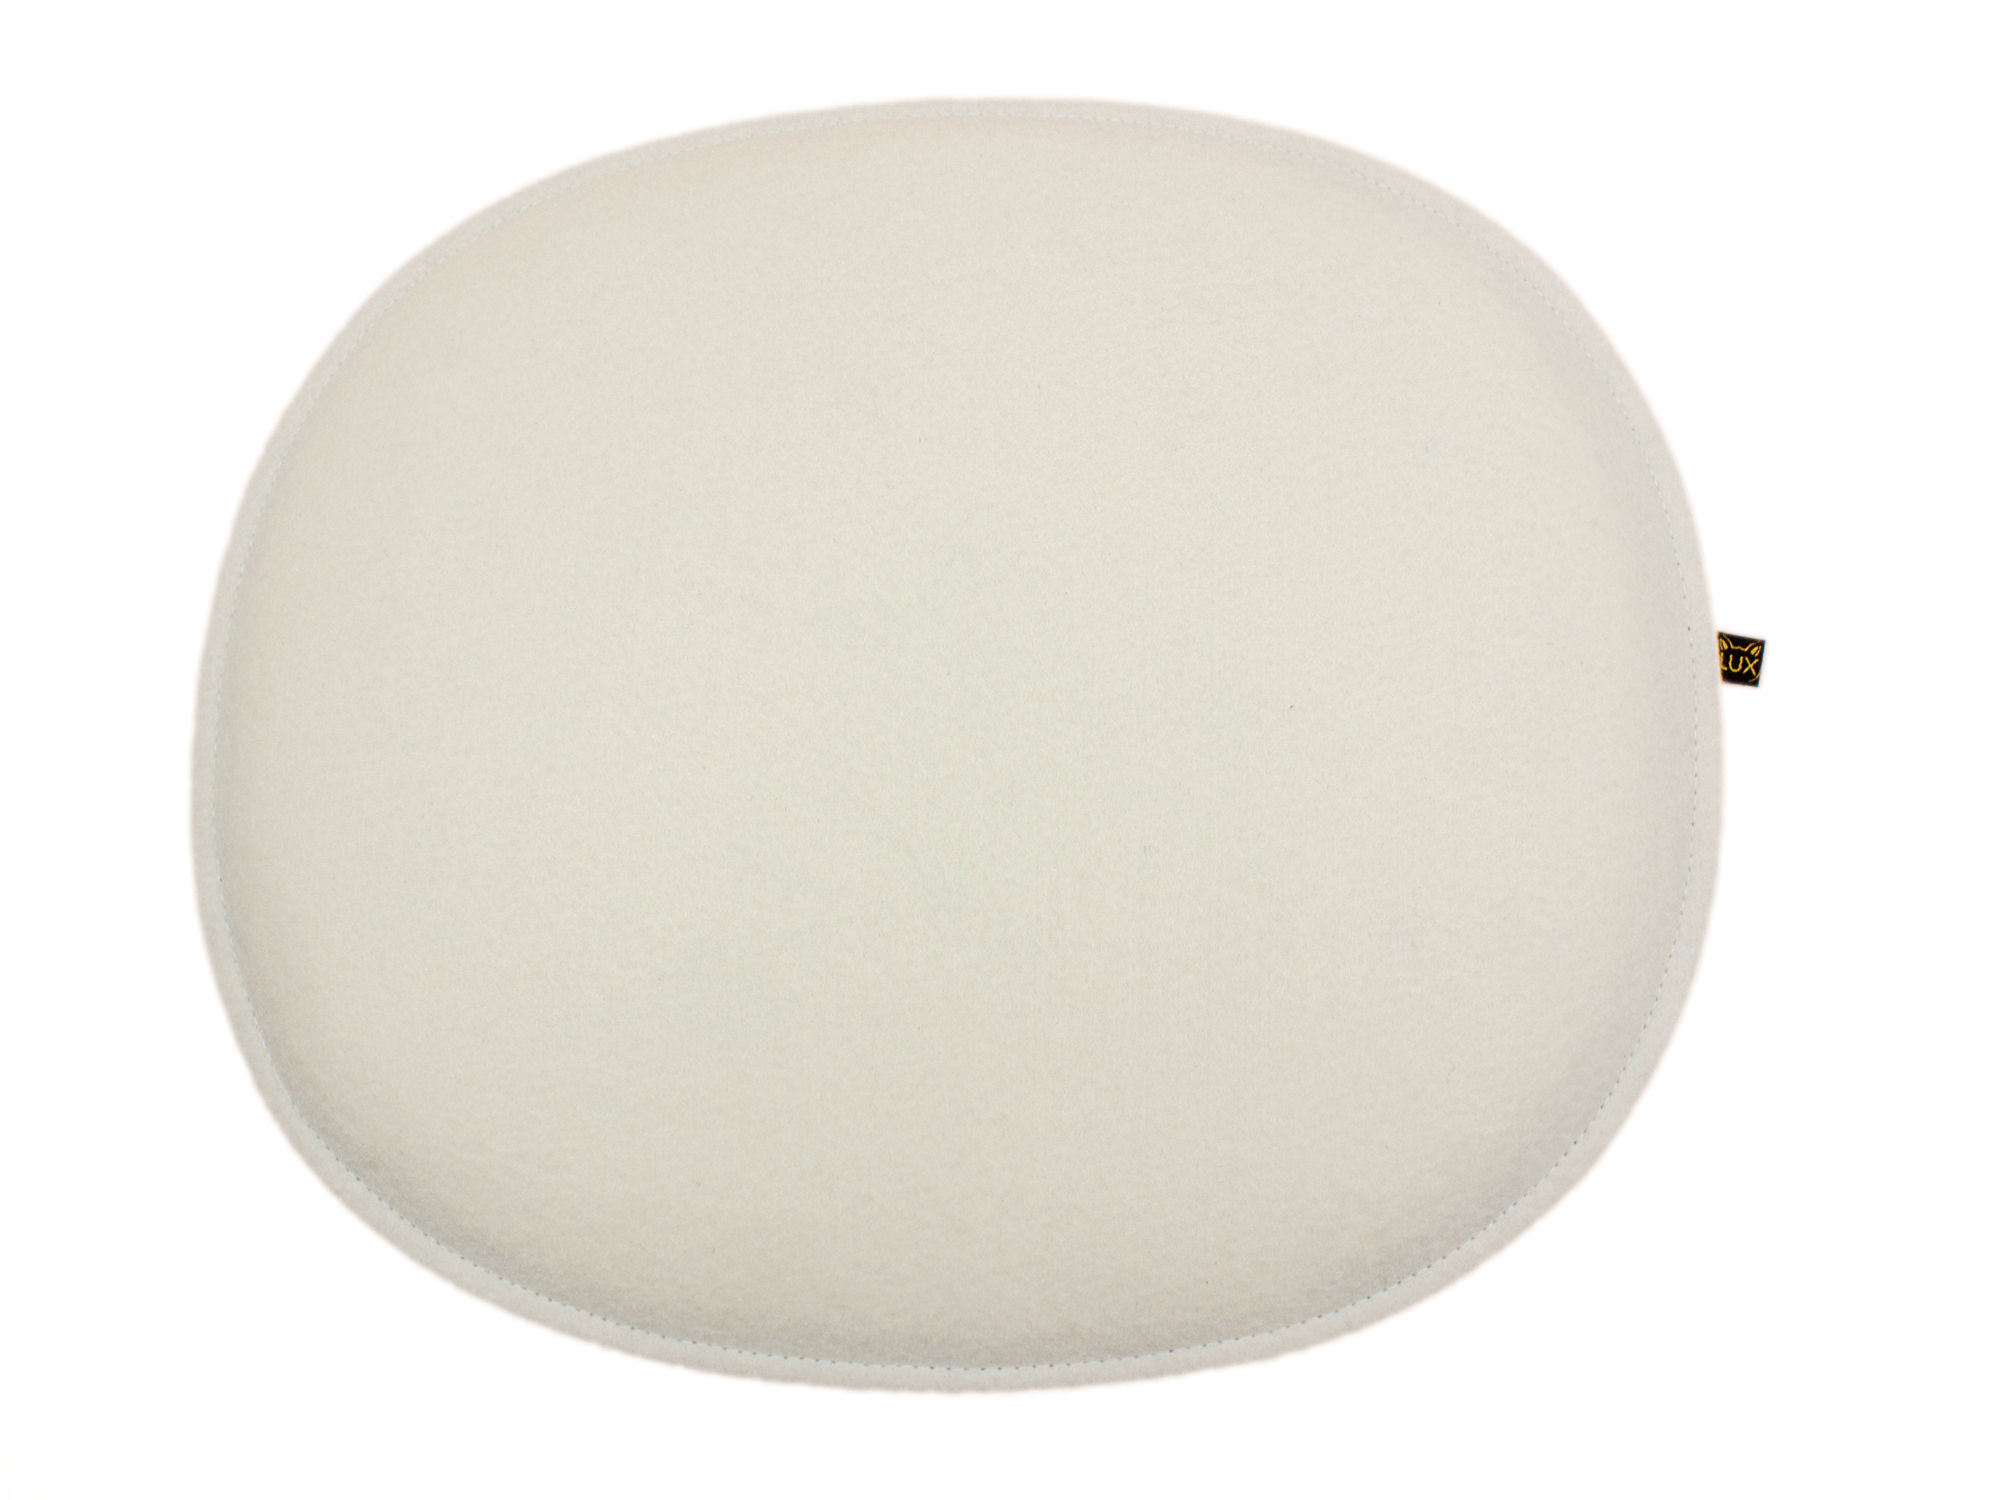 Filz Sitzkissen oval für Eames in cremeweiß und graumeliert (LX2148)